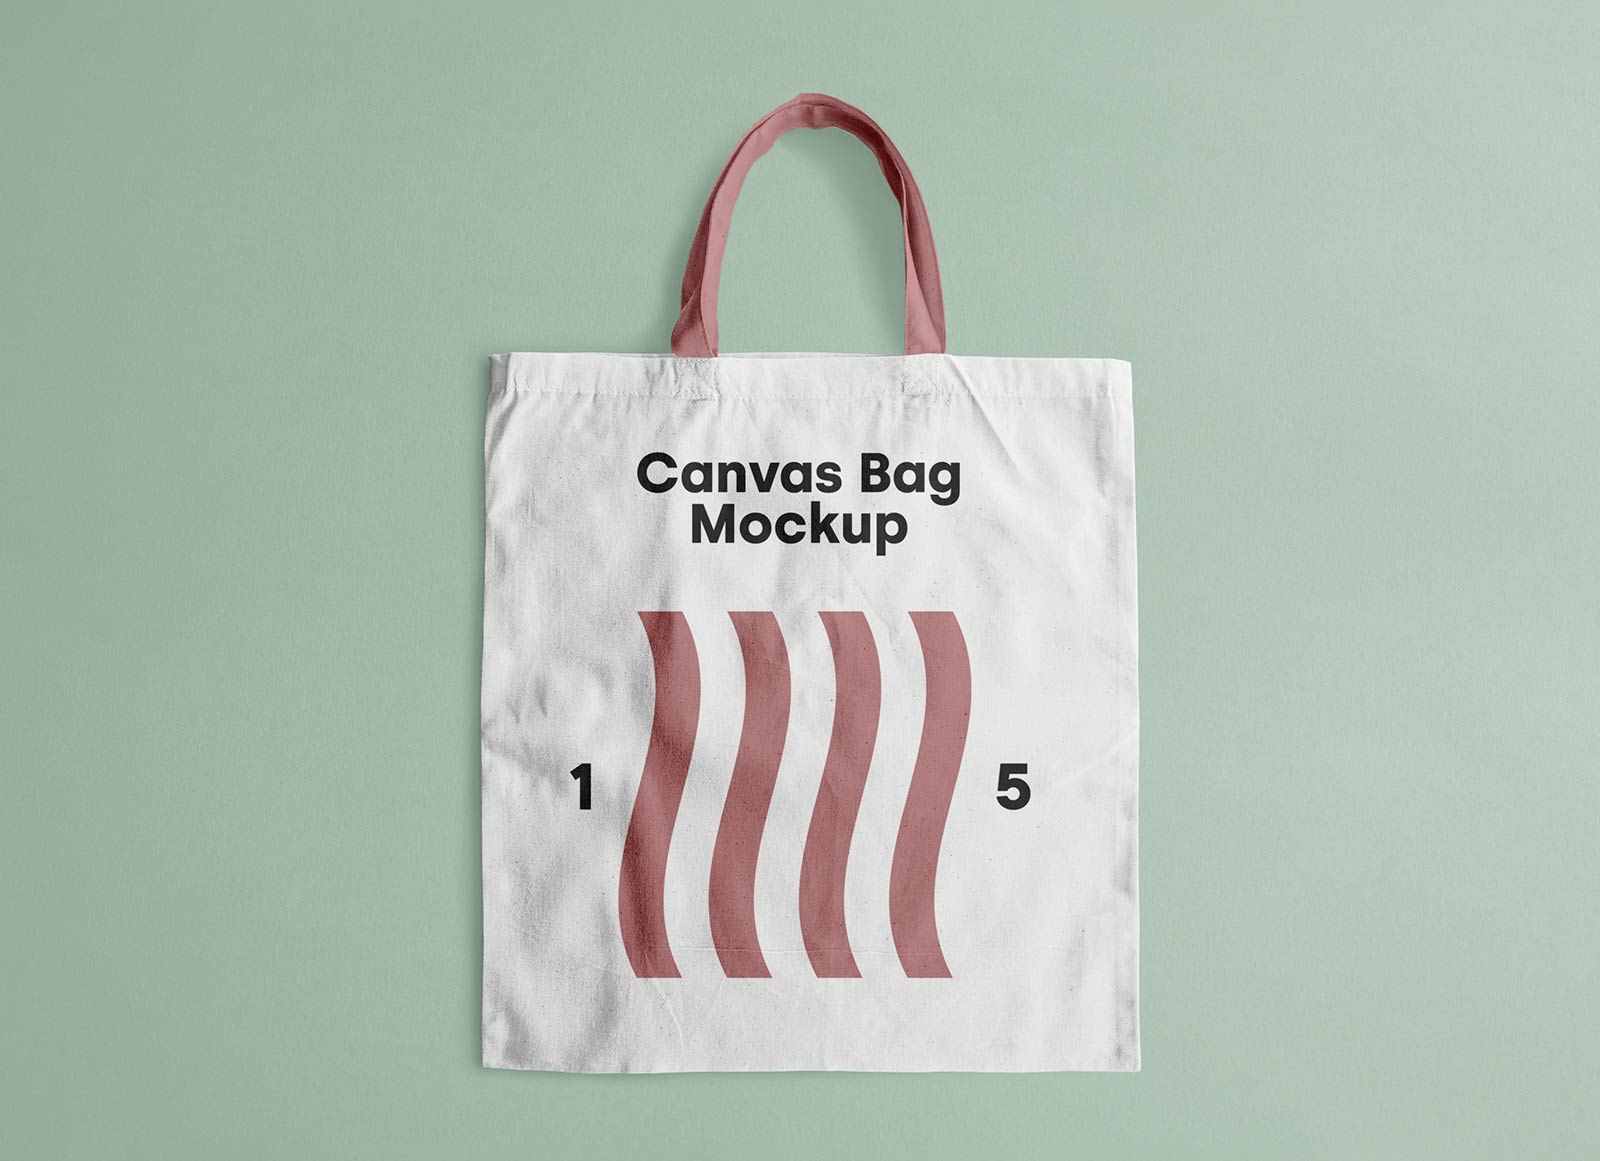 Free-Canvas-Tote-Bag-Mockup-PSD